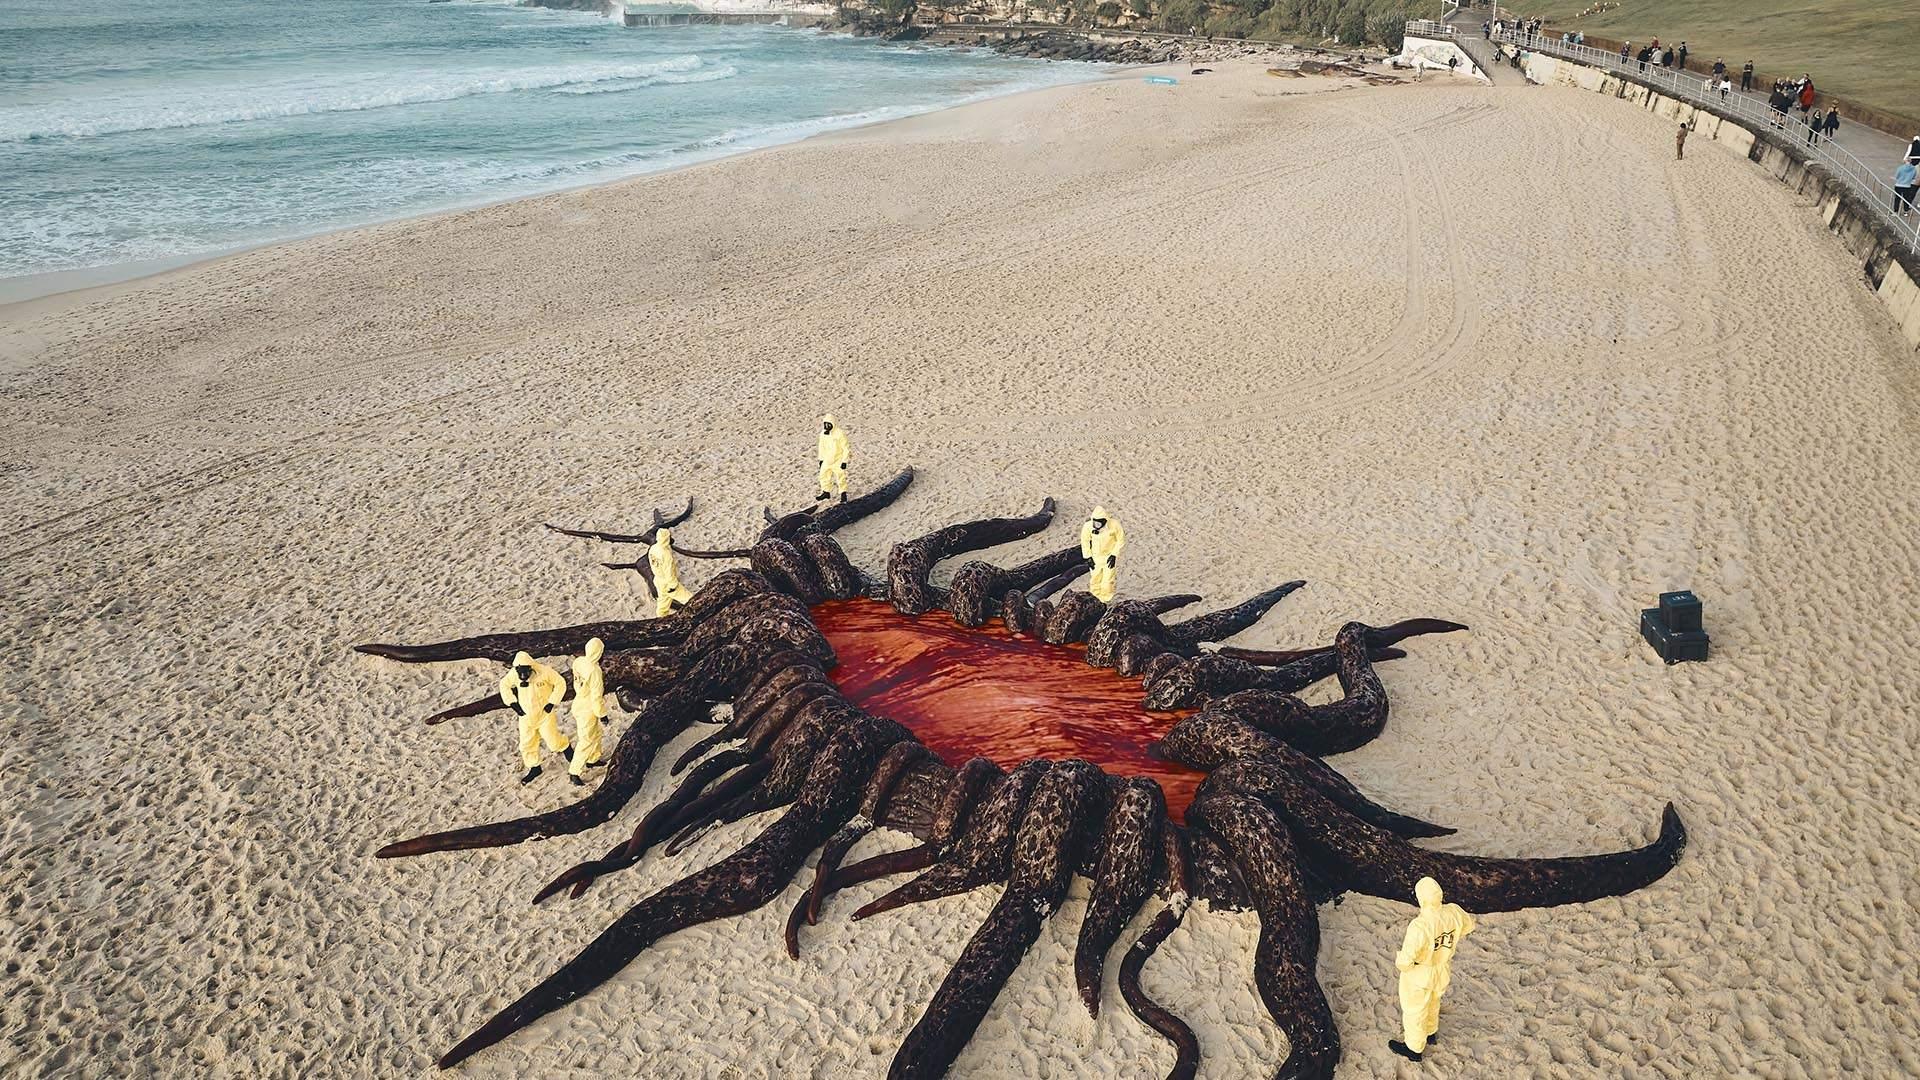 Une entrée vers le monde à l'envers installée sur la plage de Bondi en Australie pour faire la promotion de la série Stranger Things. [Aquabumps/Netflix]